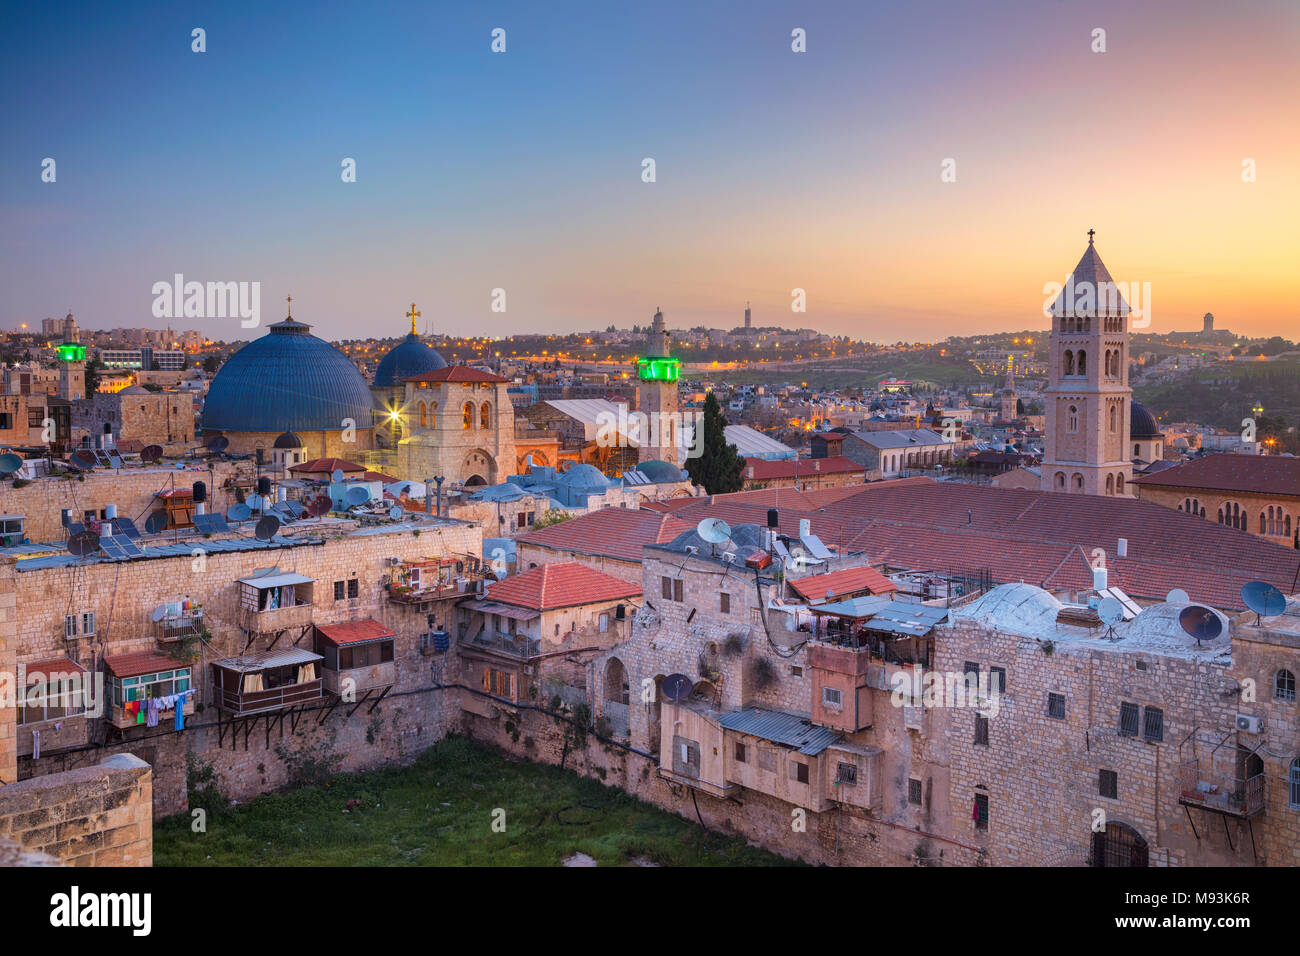 Jérusalem. Cityscape image de vieille ville de Jérusalem, Israël au lever du soleil. Banque D'Images